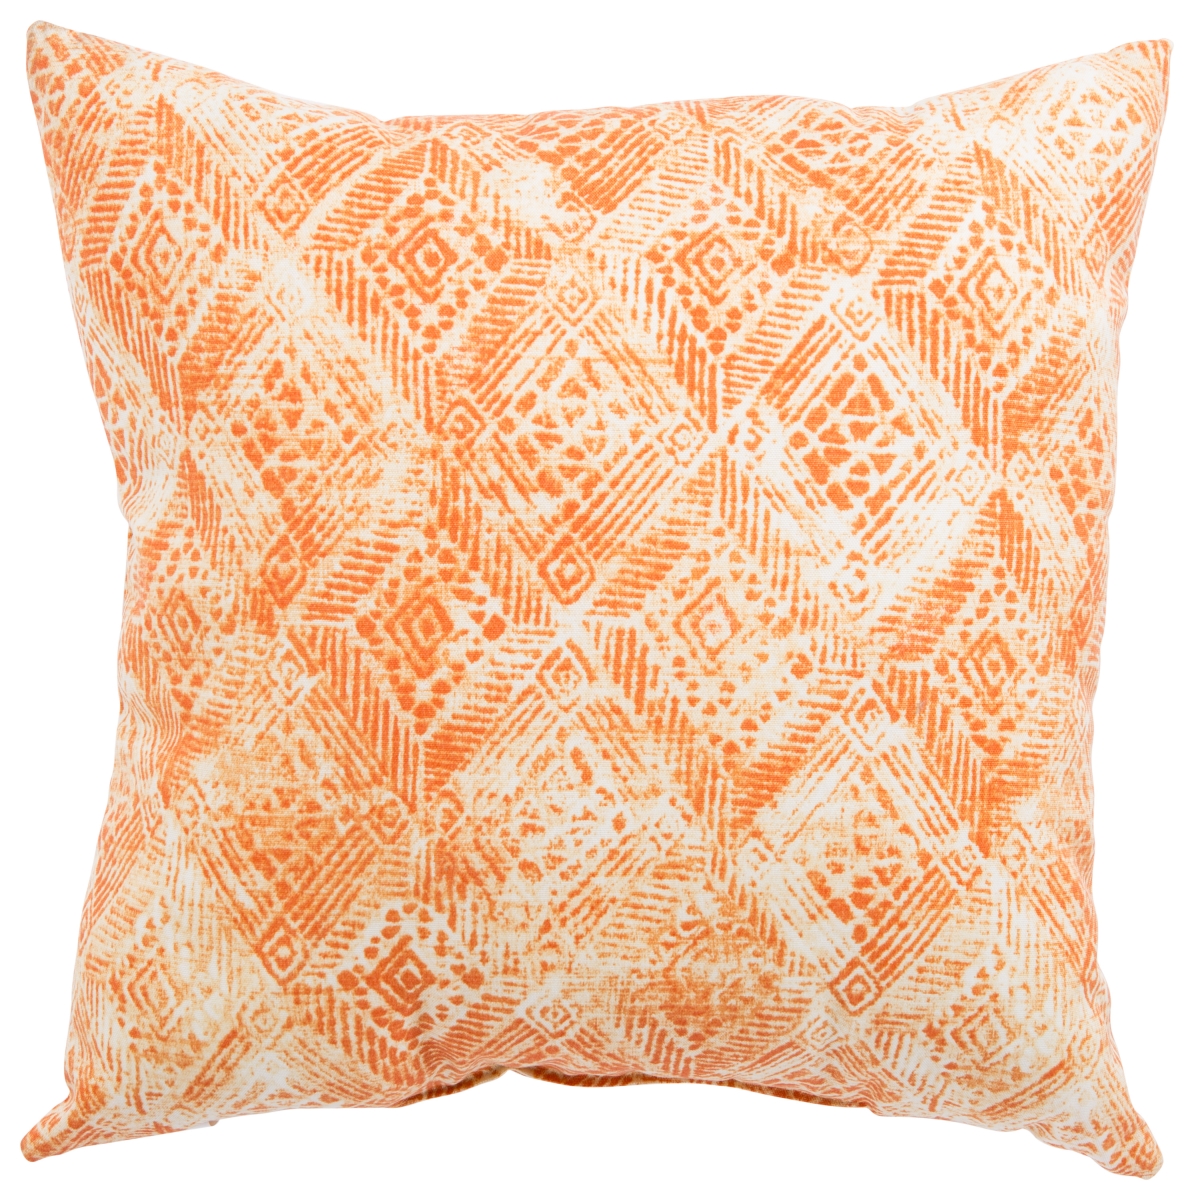 Plp100078 18 X 18 In. Veranda Darrow Fresco Orange & White Ikat Indoor & Outdoor Throw Pillow